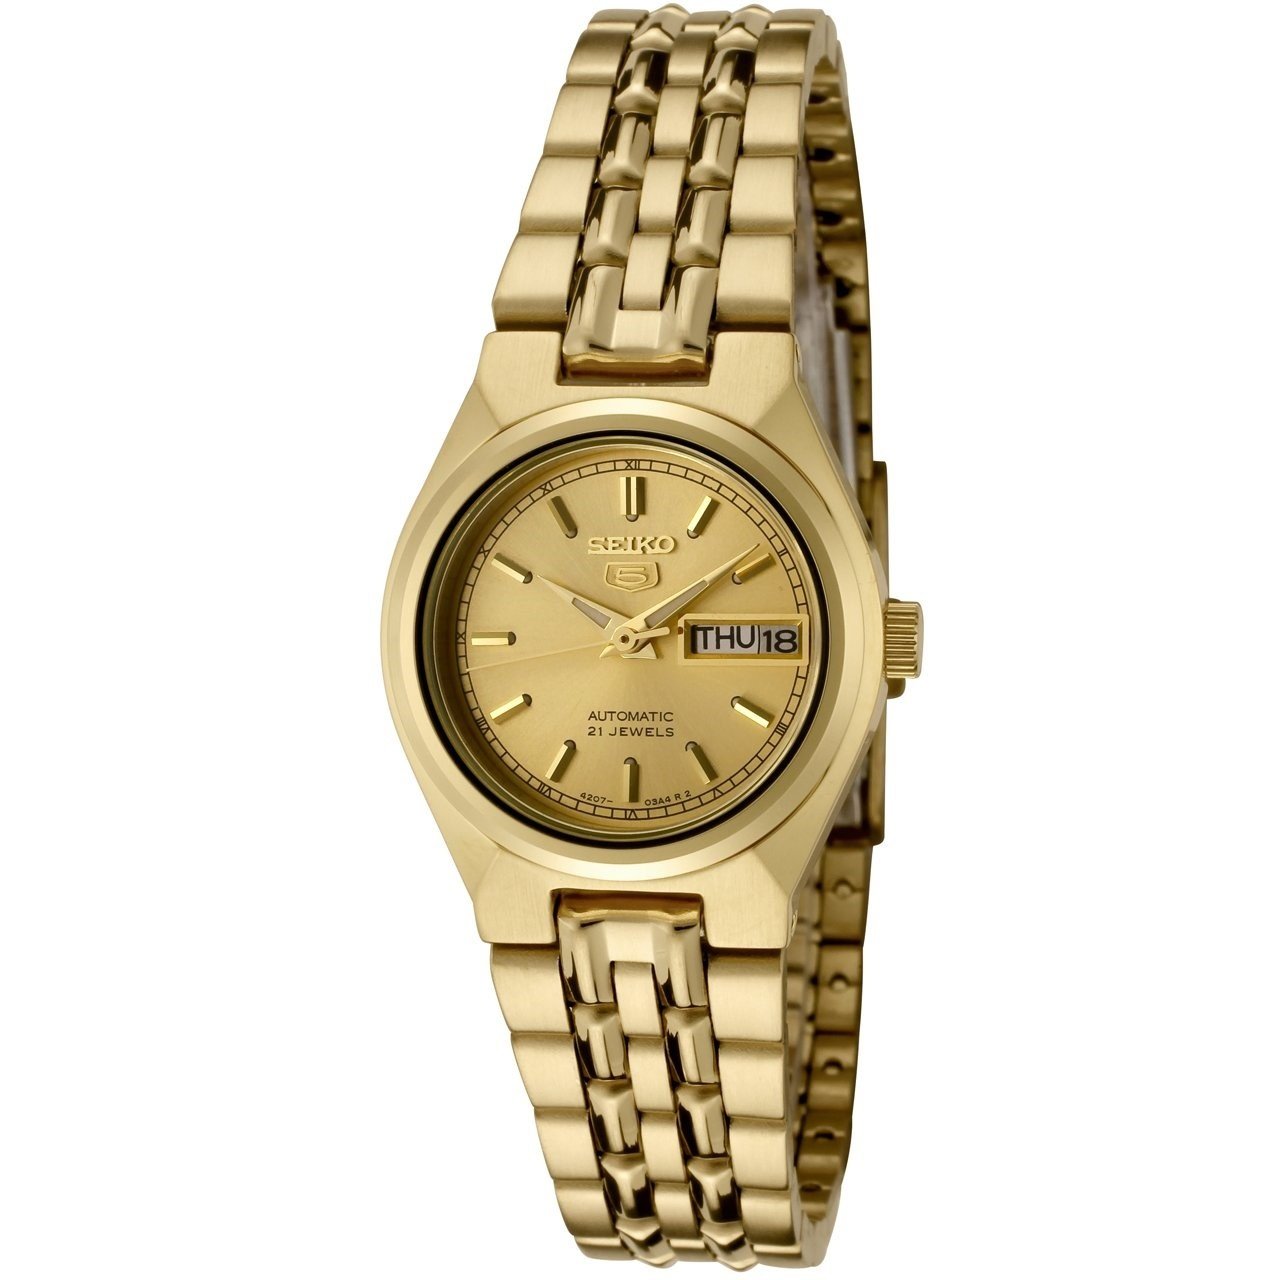 Seiko Women's SYMA04 Seiko 5 Gold-Tone Stainless Steel Watch - Bezali